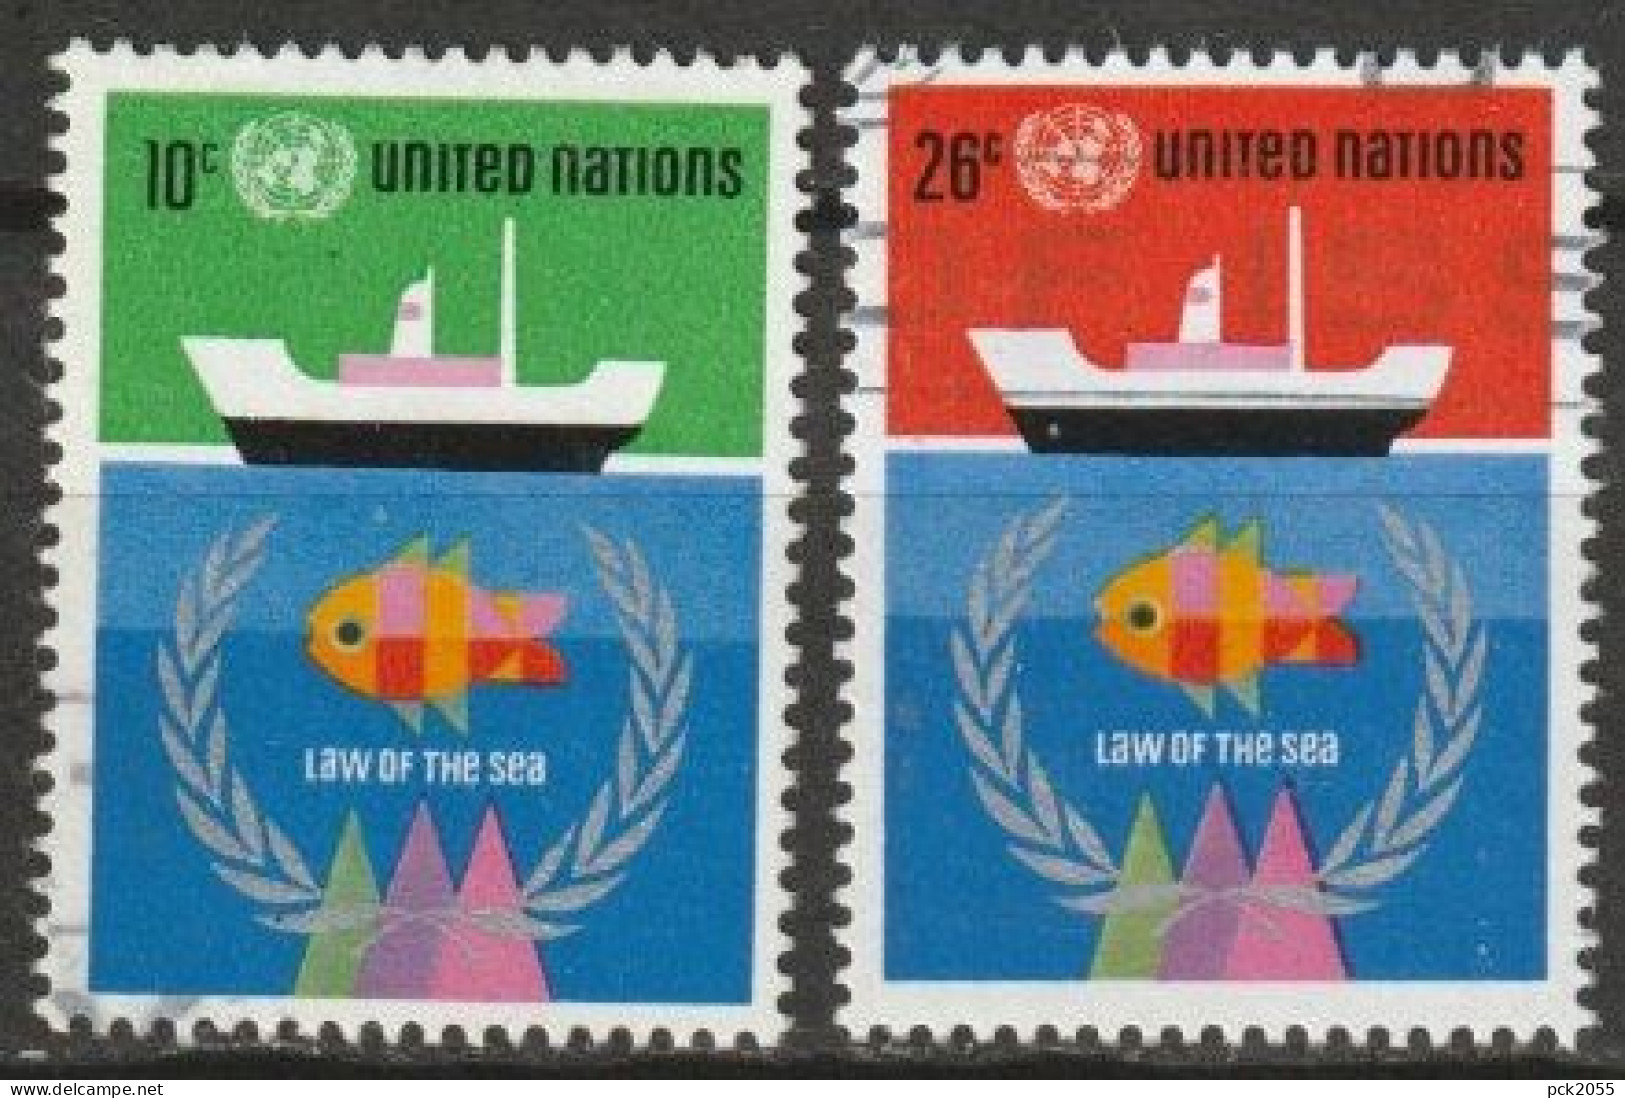 UNO New York 1974 MiNr.277 - 278 O Gestempelt Seerechtskonferenz Der UNO ( 4749 )günstige Versandkosten - Usati